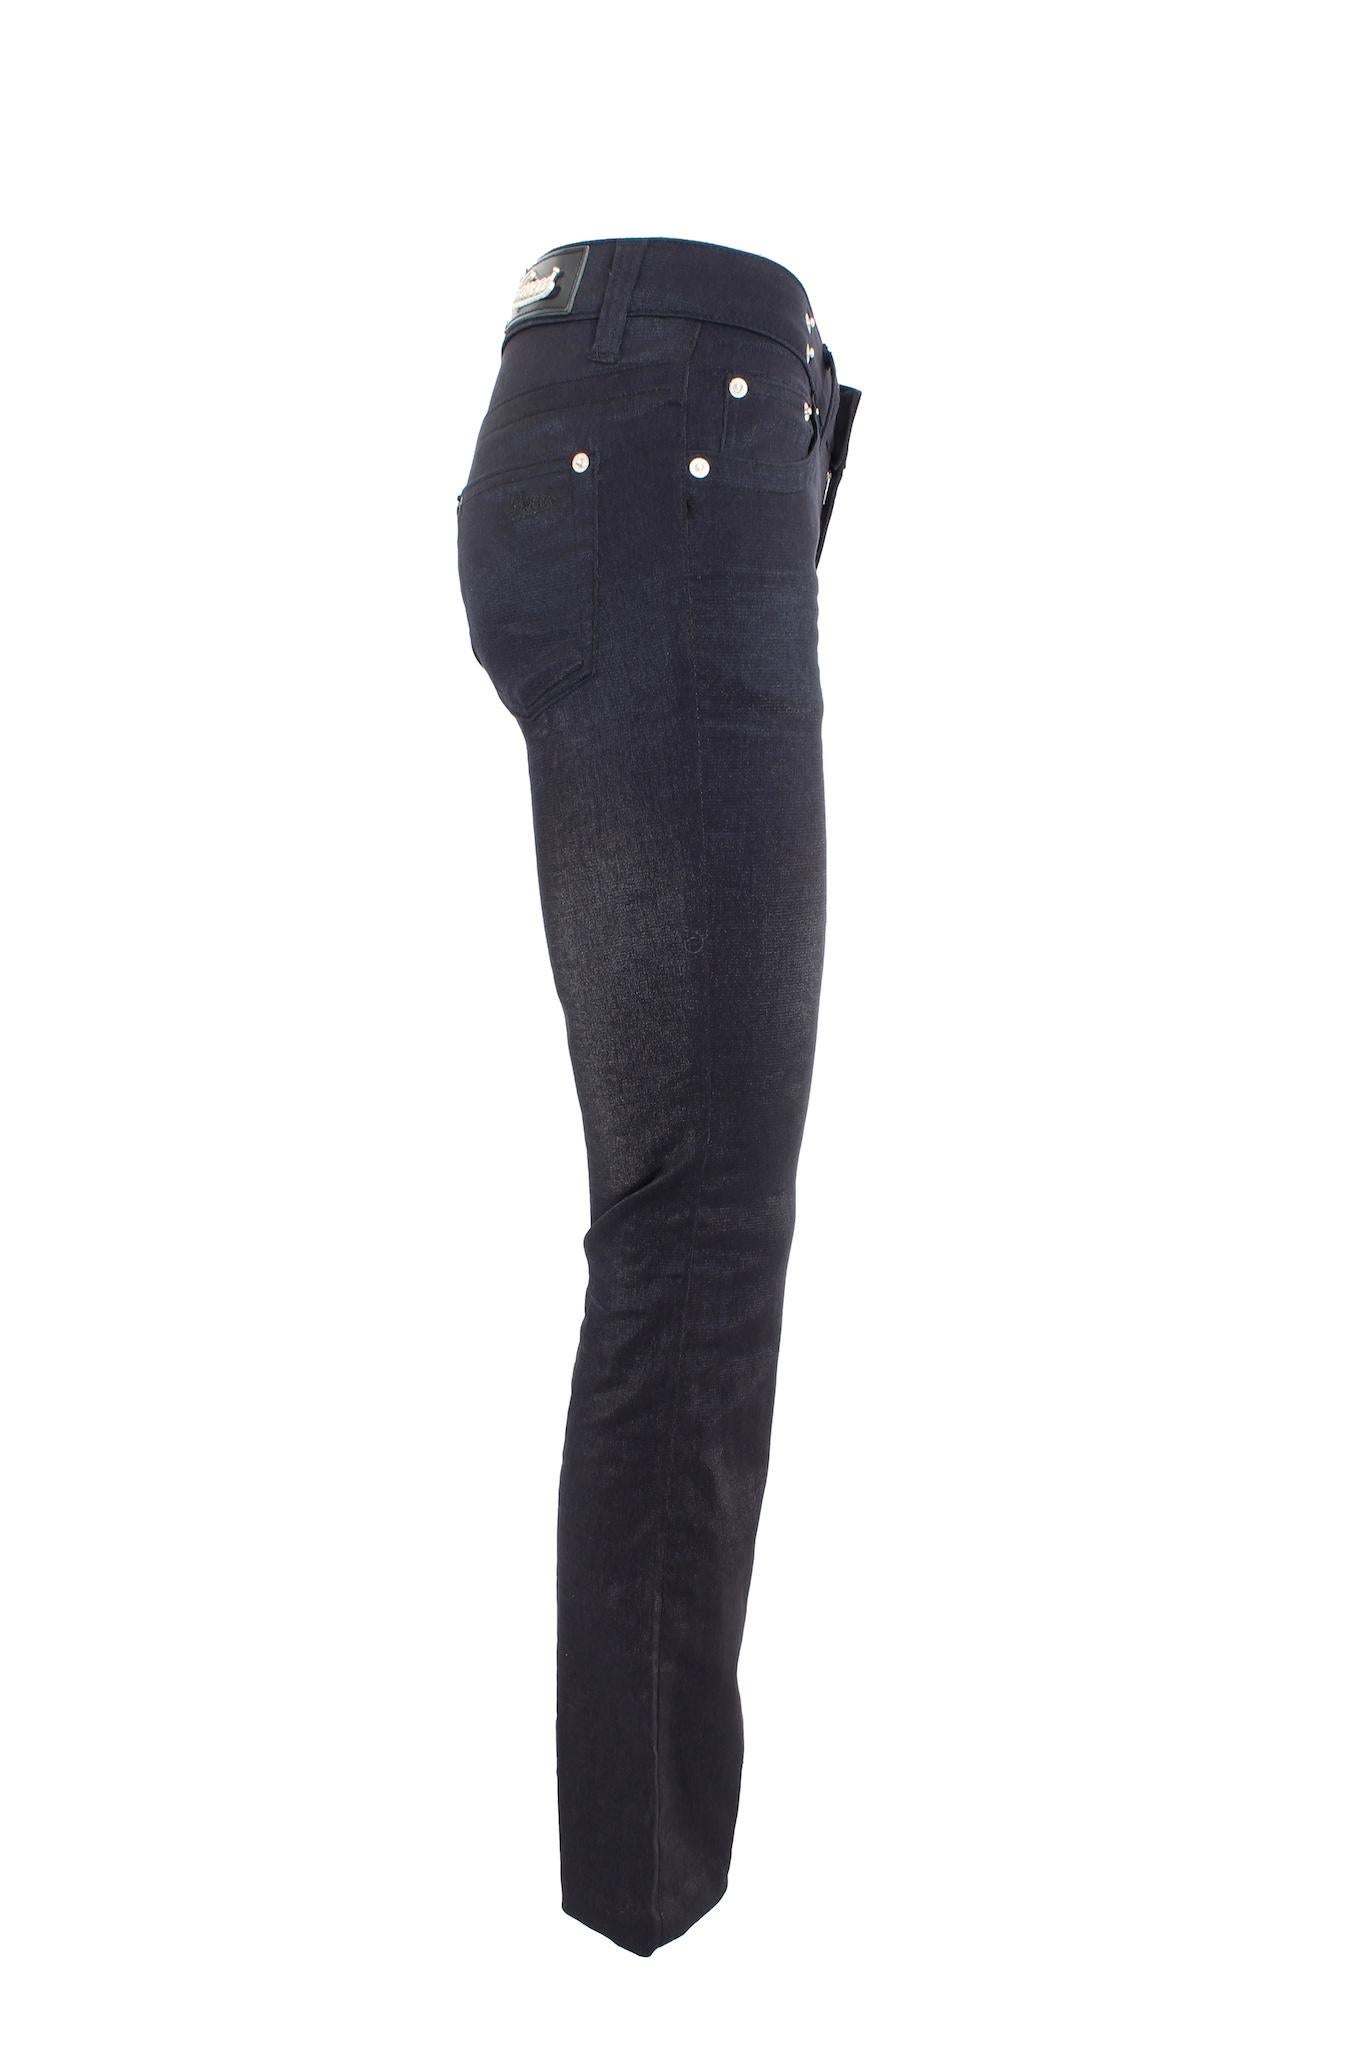 Gucci Black Pamuk Lurex Capri Jeans Pants 2000s  Excellent état - En vente à Brindisi, Bt